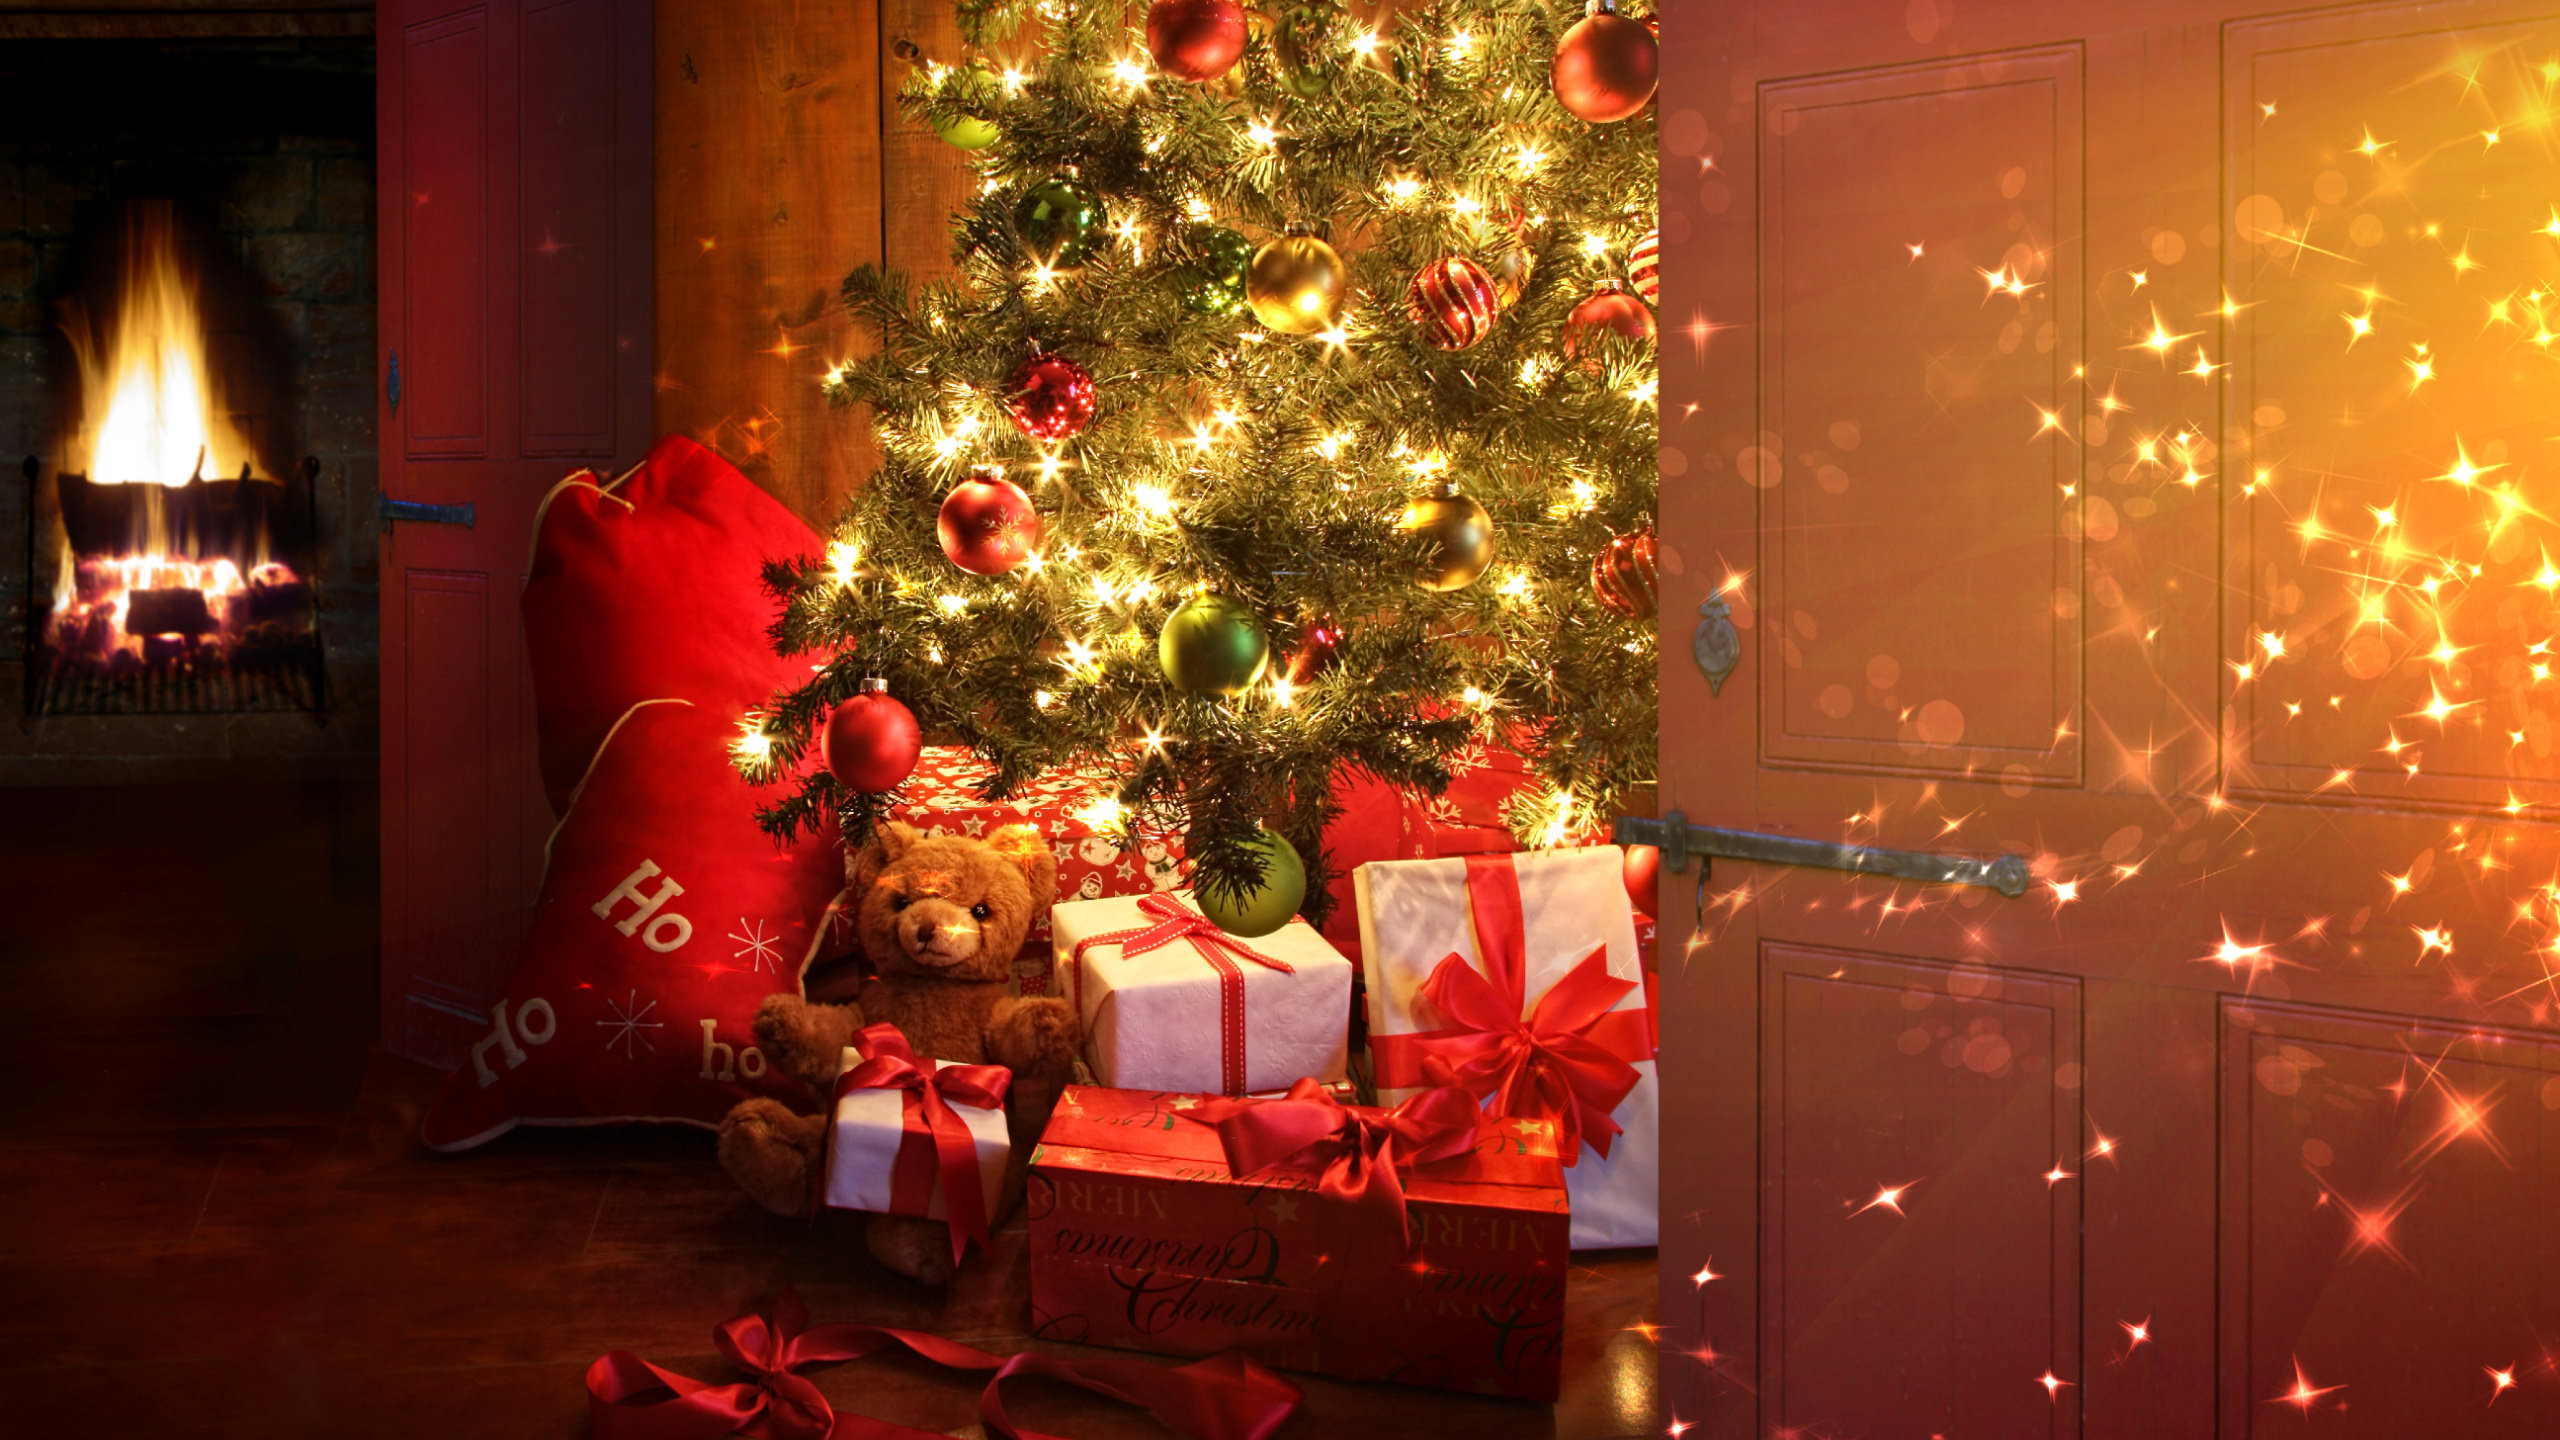 Weihnachten, Weihnachtsbaum, Weihnachtsdekoration, Christmas Ornament, Weihnachtsbeleuchtung. Wallpaper in 2560x1440 Resolution